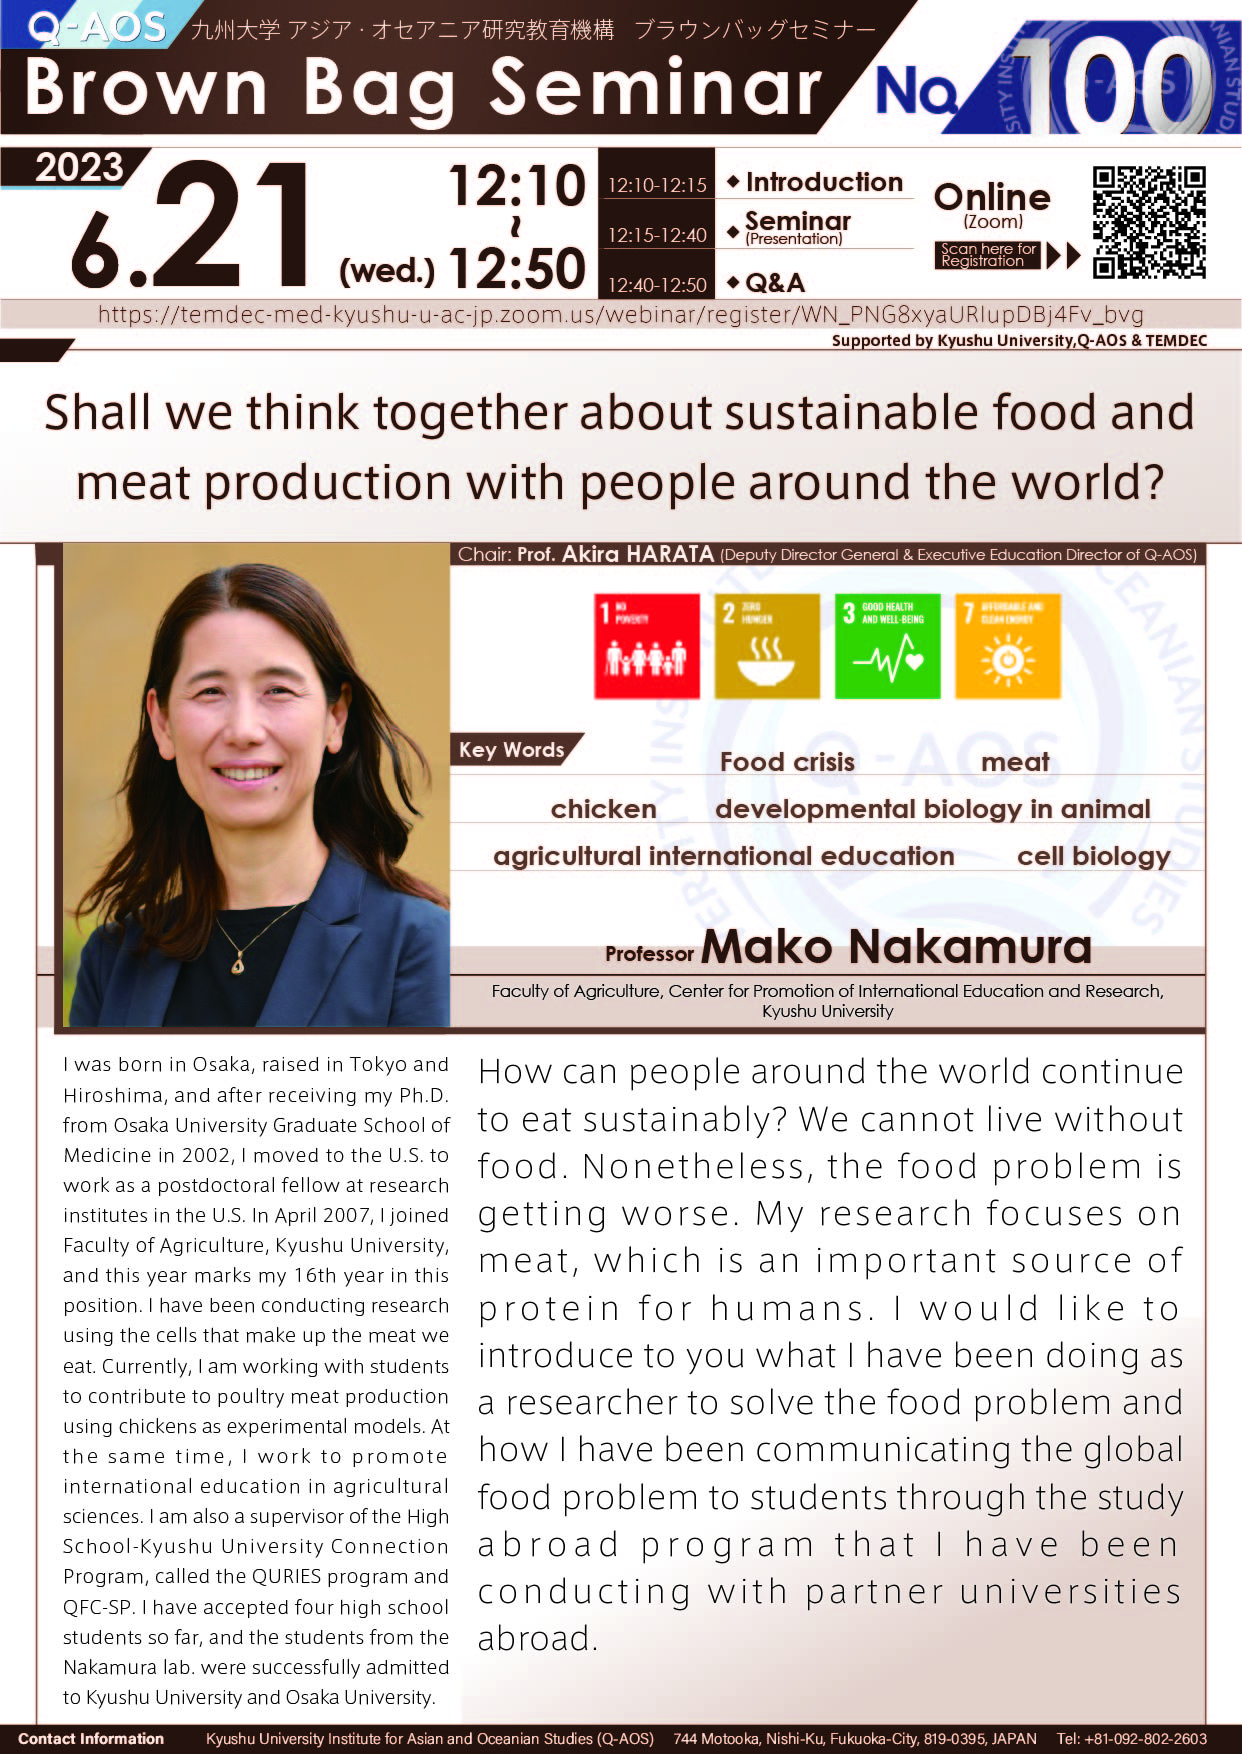 アイキャッチ画像：Q-AOS Brown Bag Seminar Series The 100th Seminar “Shall we think about sustainable food and meat production together with people from around the world?”